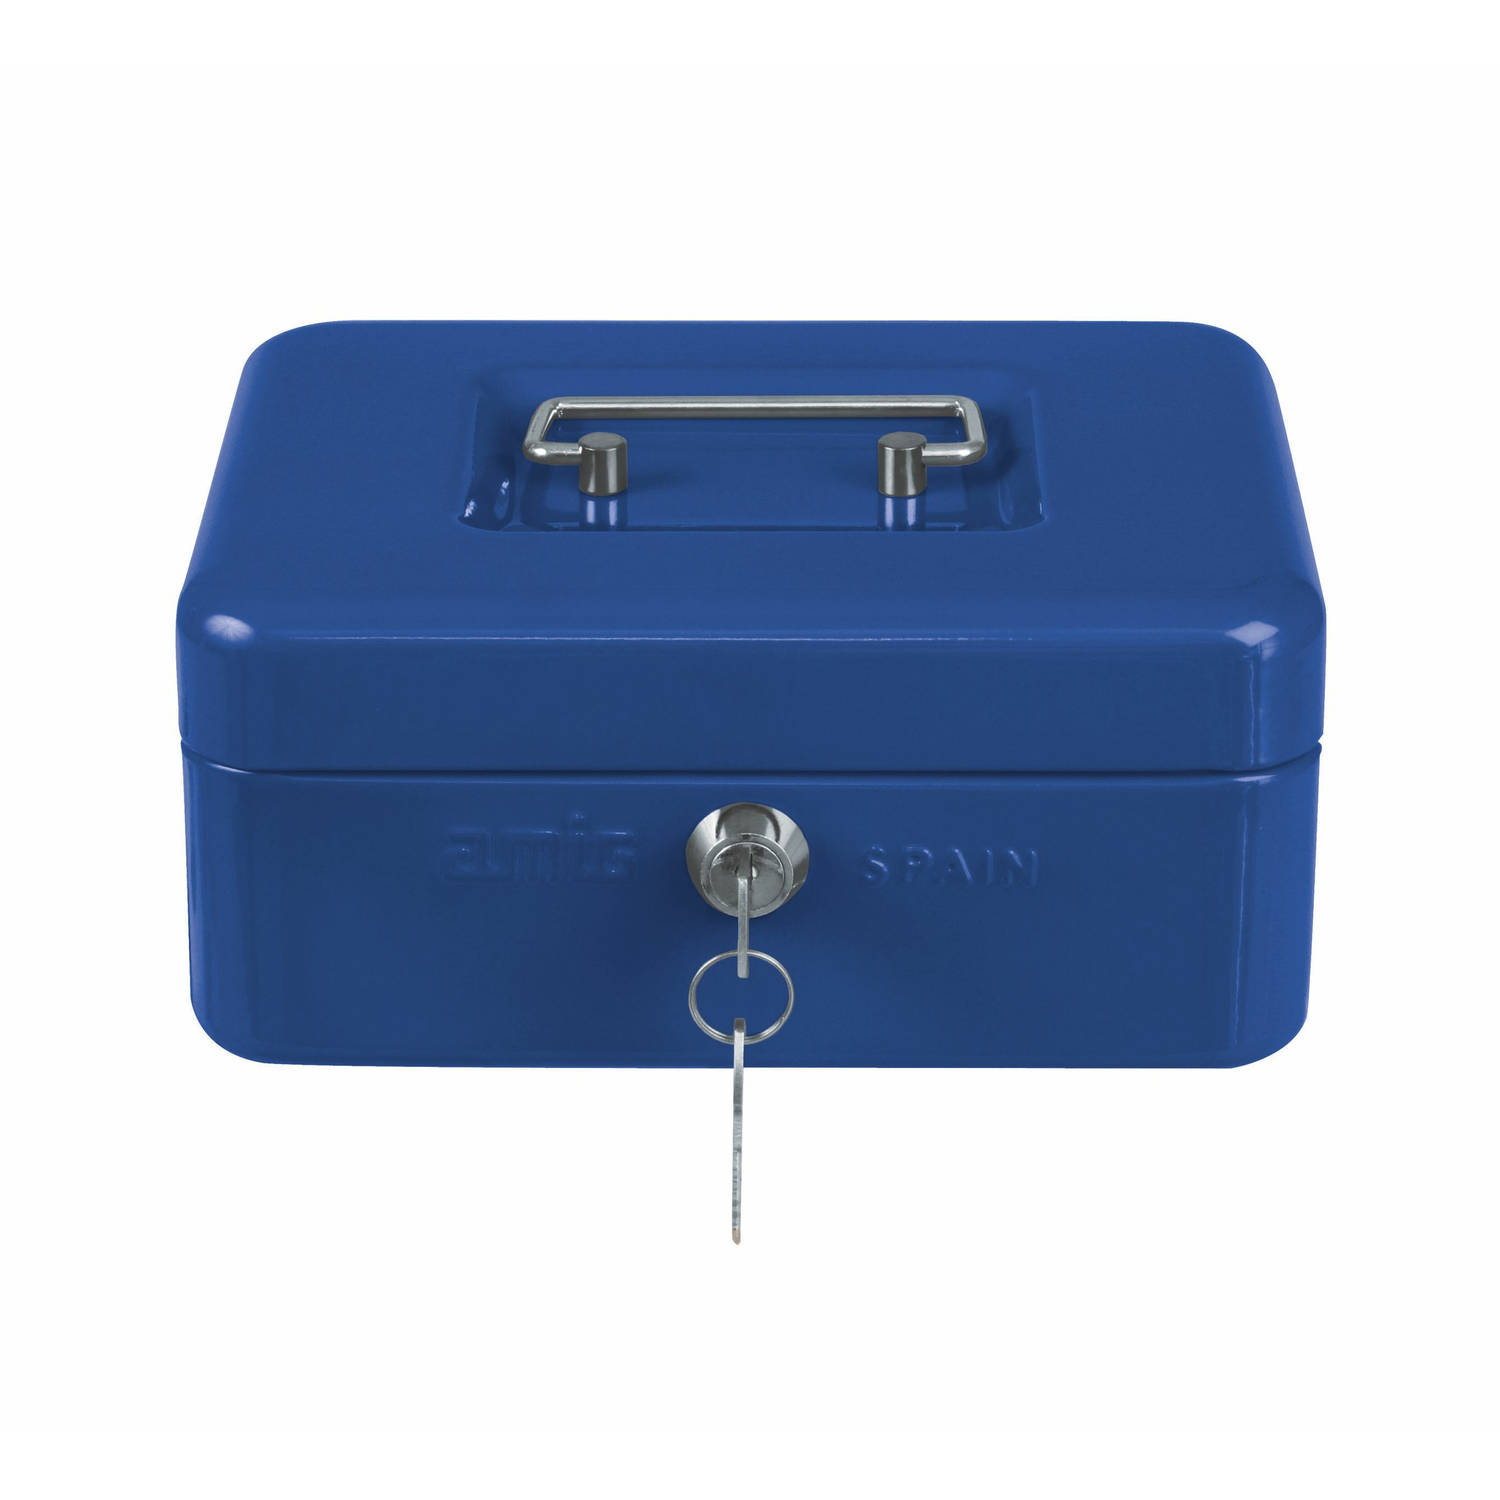 AMIG Geldkistje met 2 sleutels - blauw - staal - muntbakje - 25 x 18 x 9 cm - inbraakbeveiliging